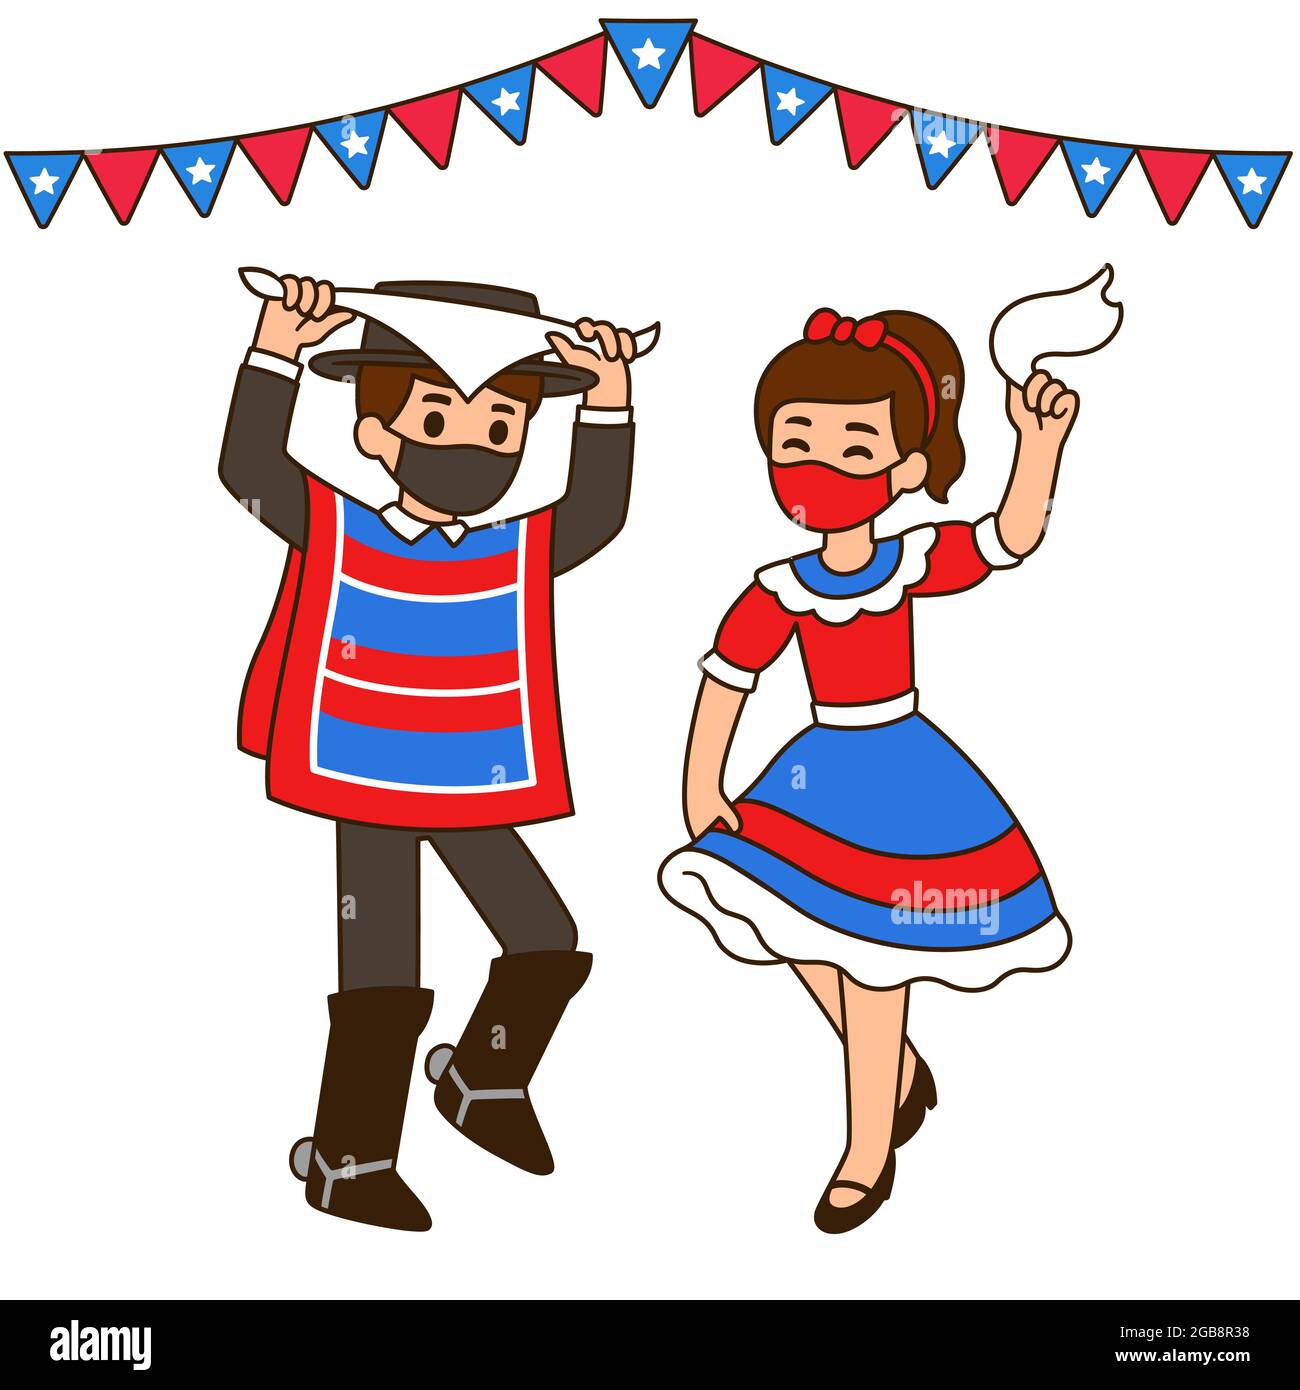 Fiestas Patrias 2021, chilenischer Nationalfeiertag. Nette Cartoon Kinder tanzen Cueca in Gesichtsmasken aufgrund Covid. Vektorgrafik. Stock Vektor